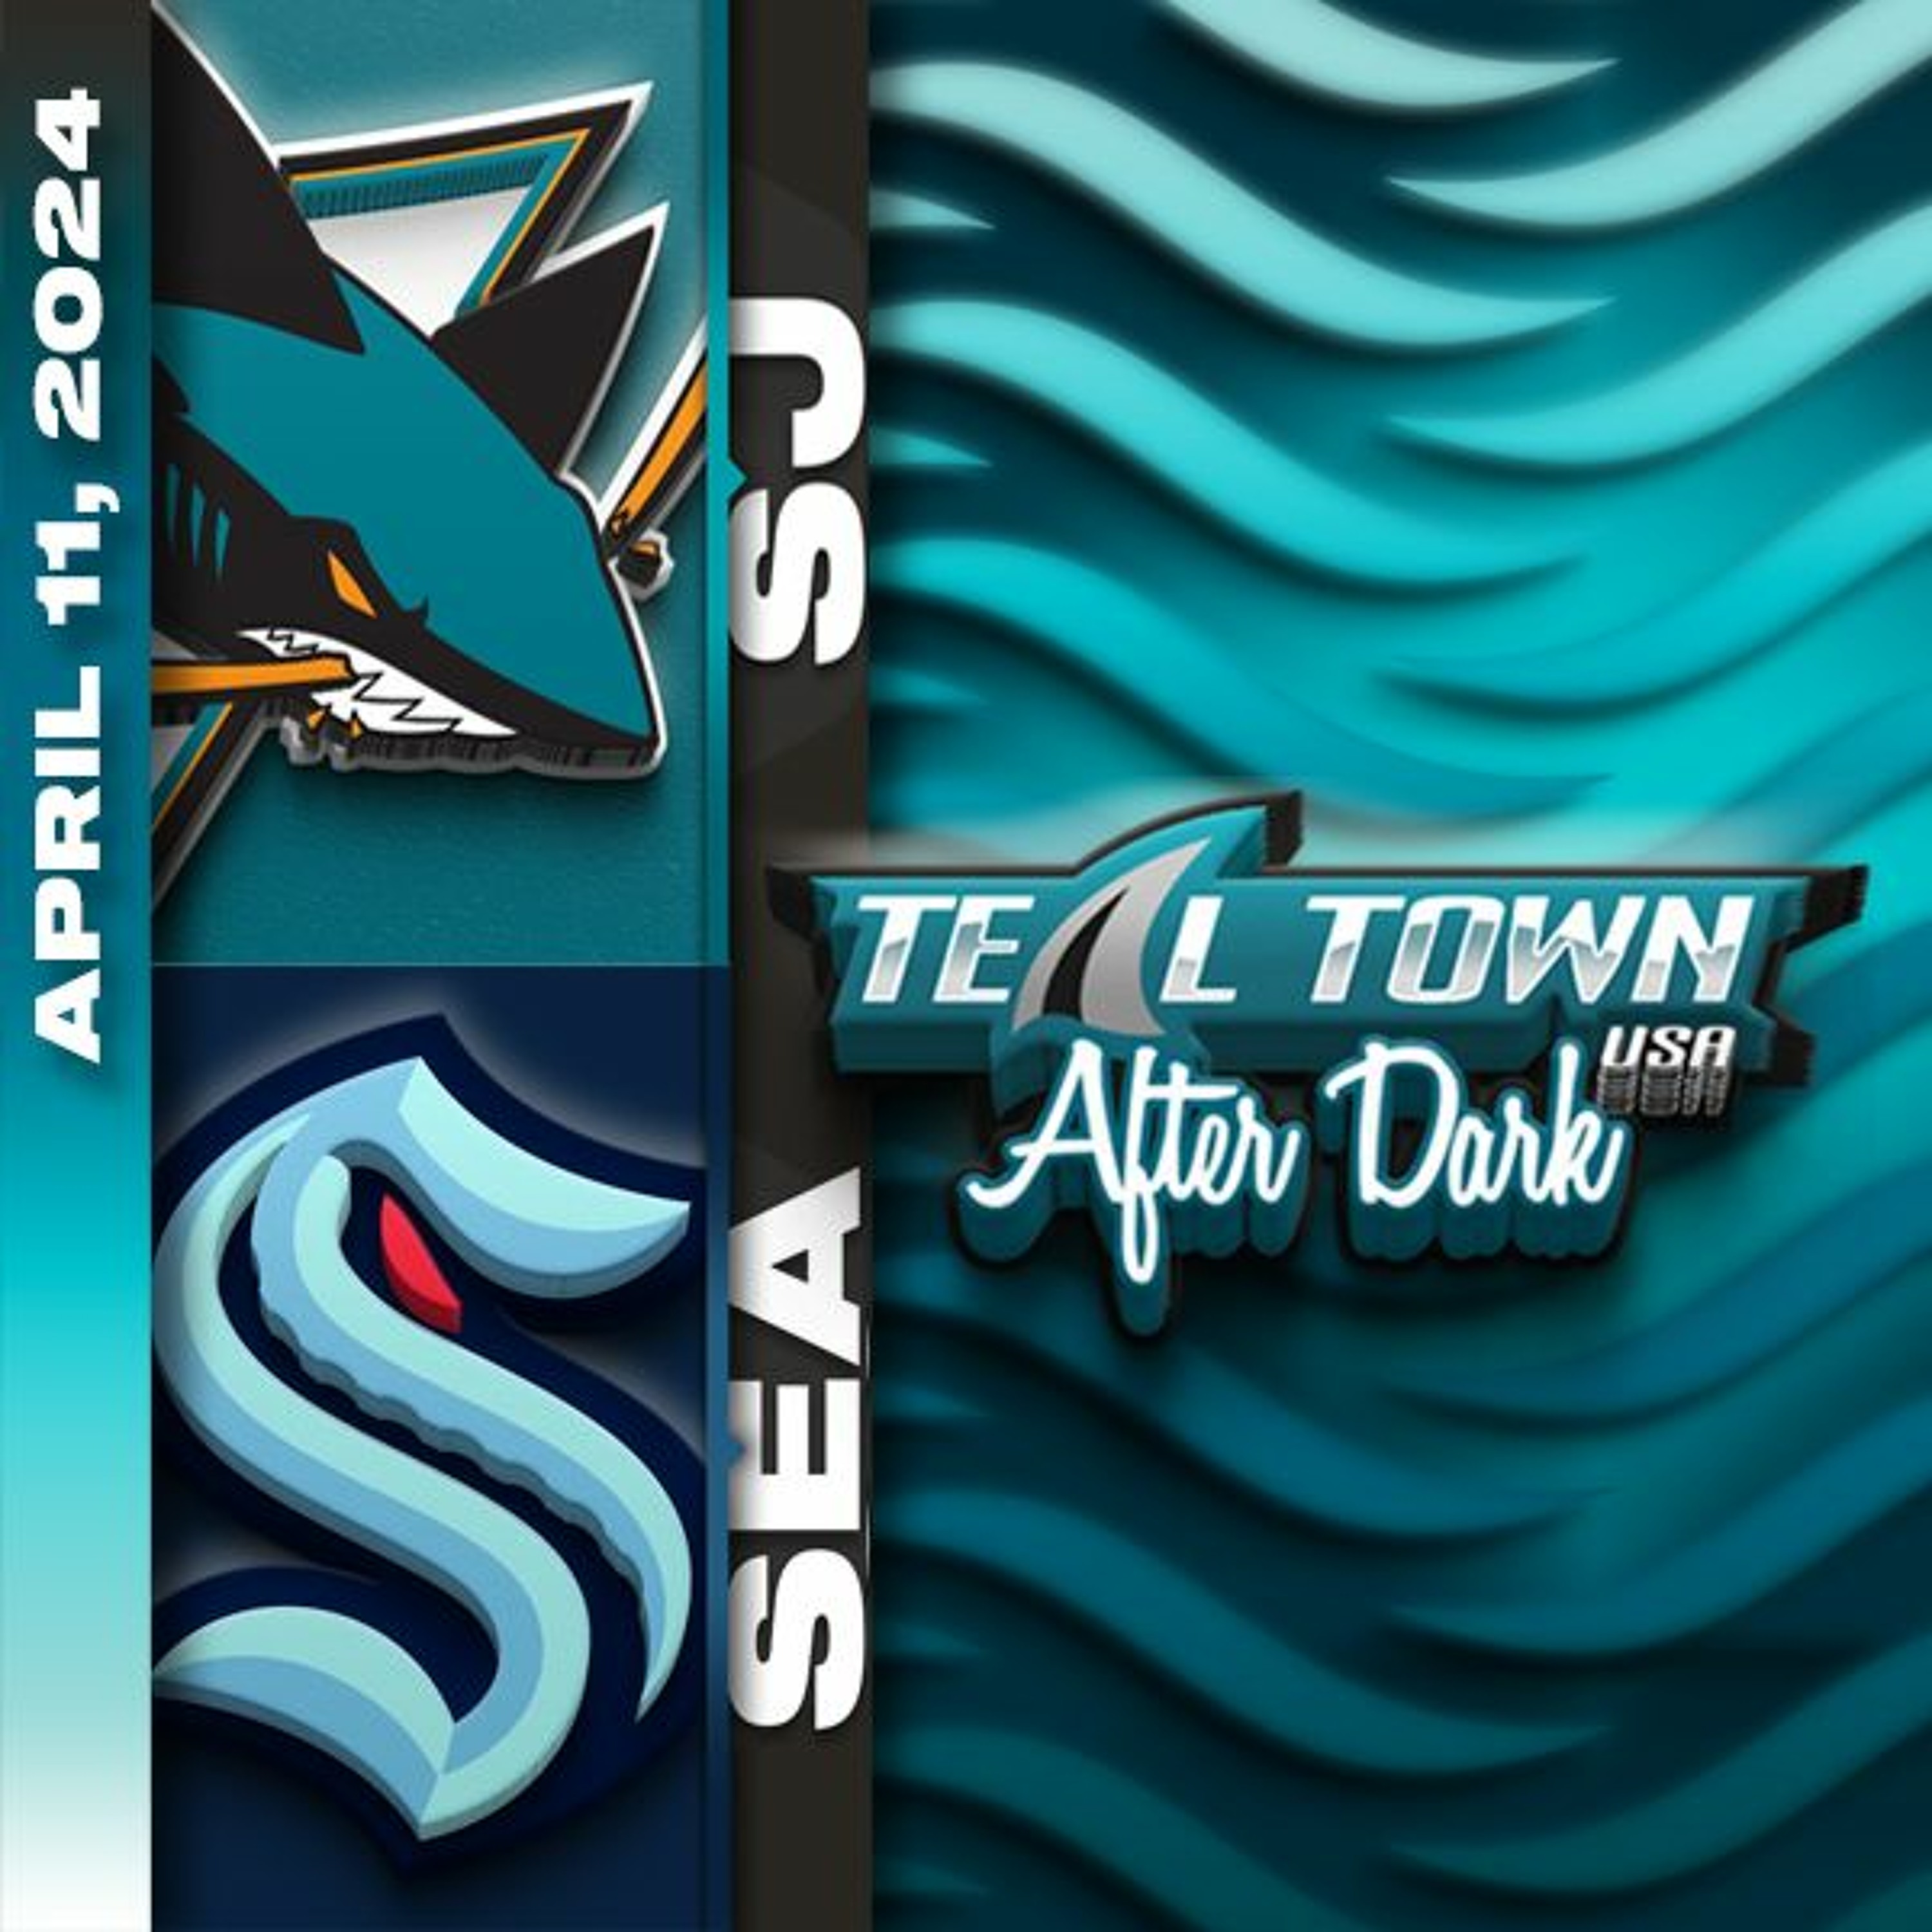 San Jose Sharks vs Seattle Kraken - 4/11/2024 - Teal Town USA After Dark (Postgame)